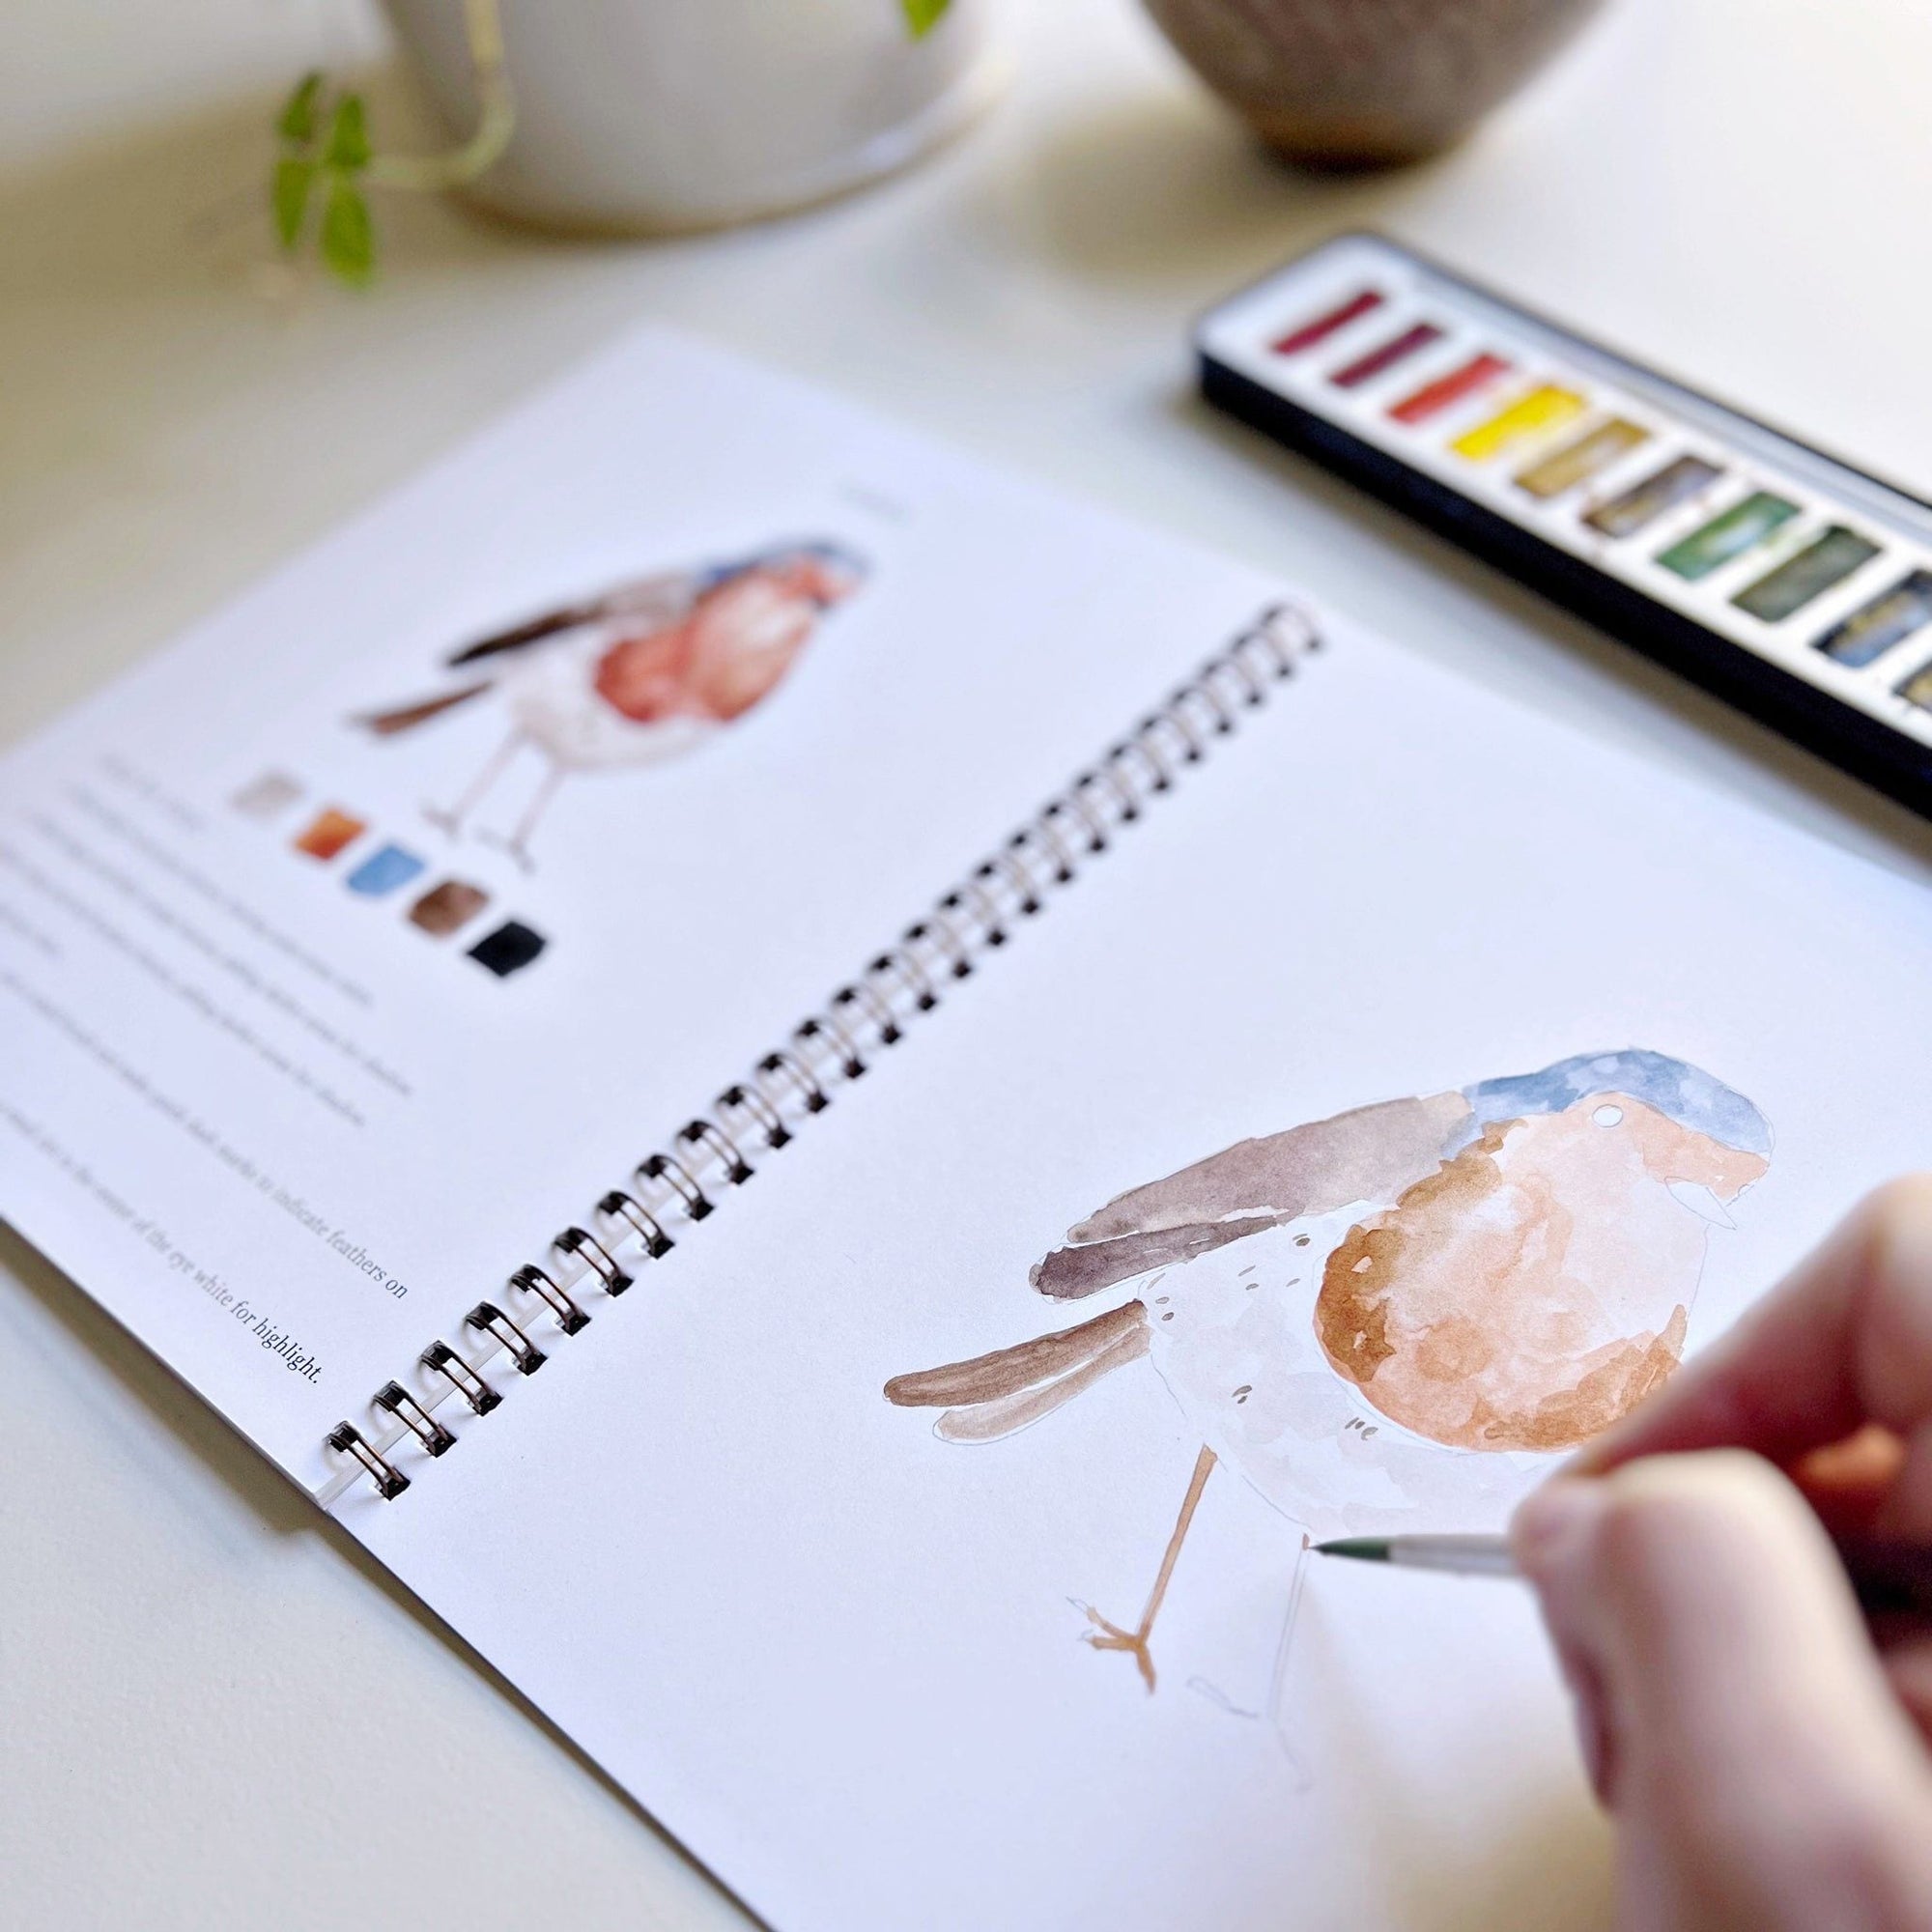 birds watercolor workbook - emily lex studio